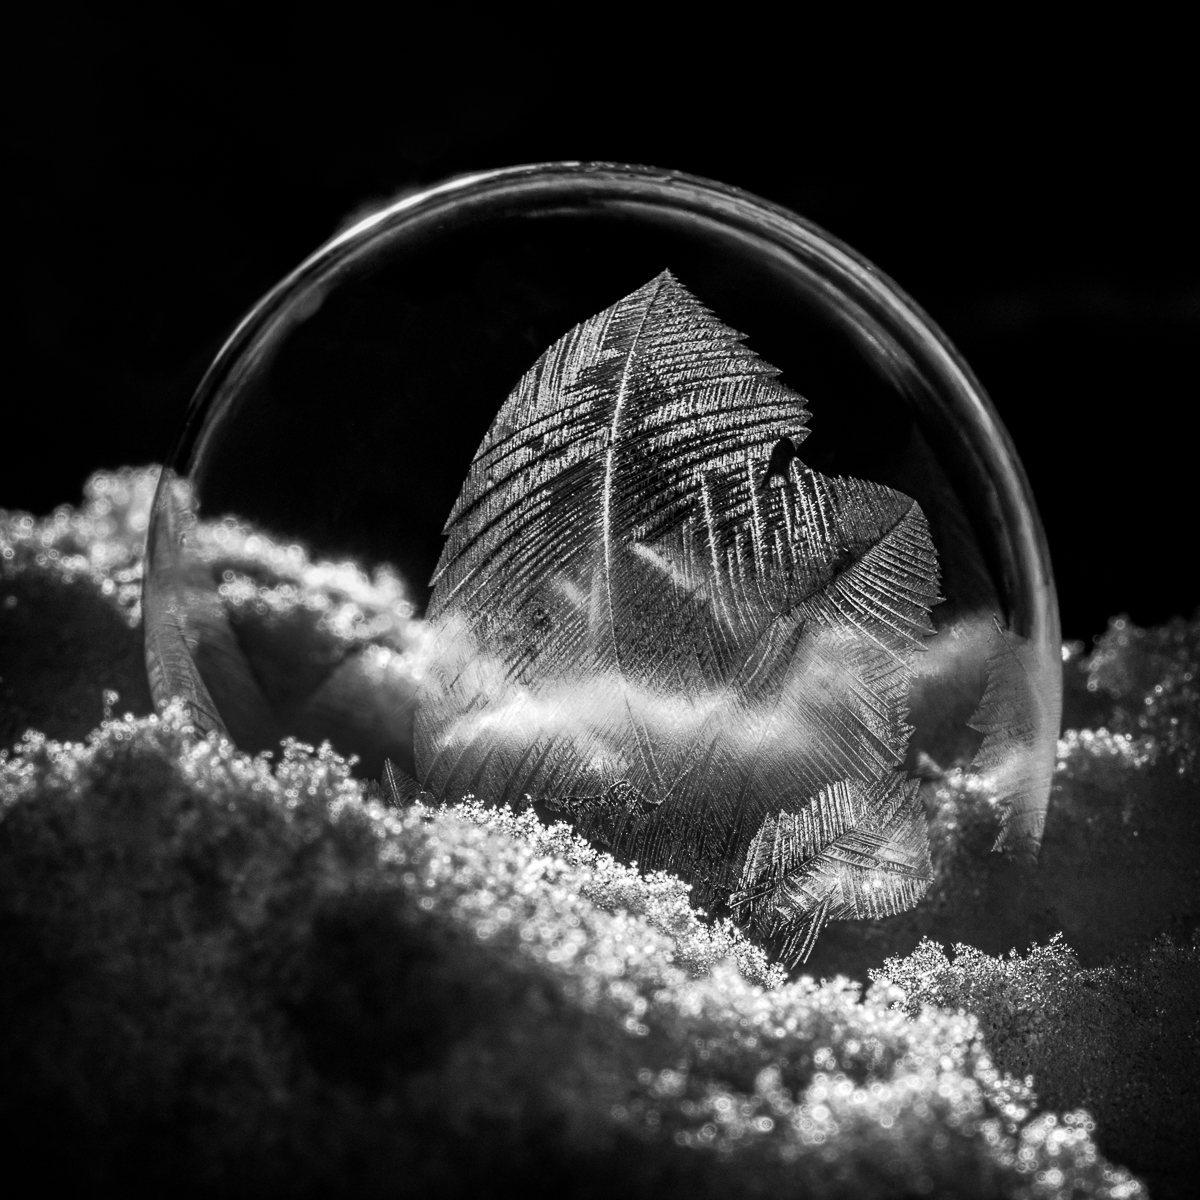 Frozen Bubbles by Henry Heerschap